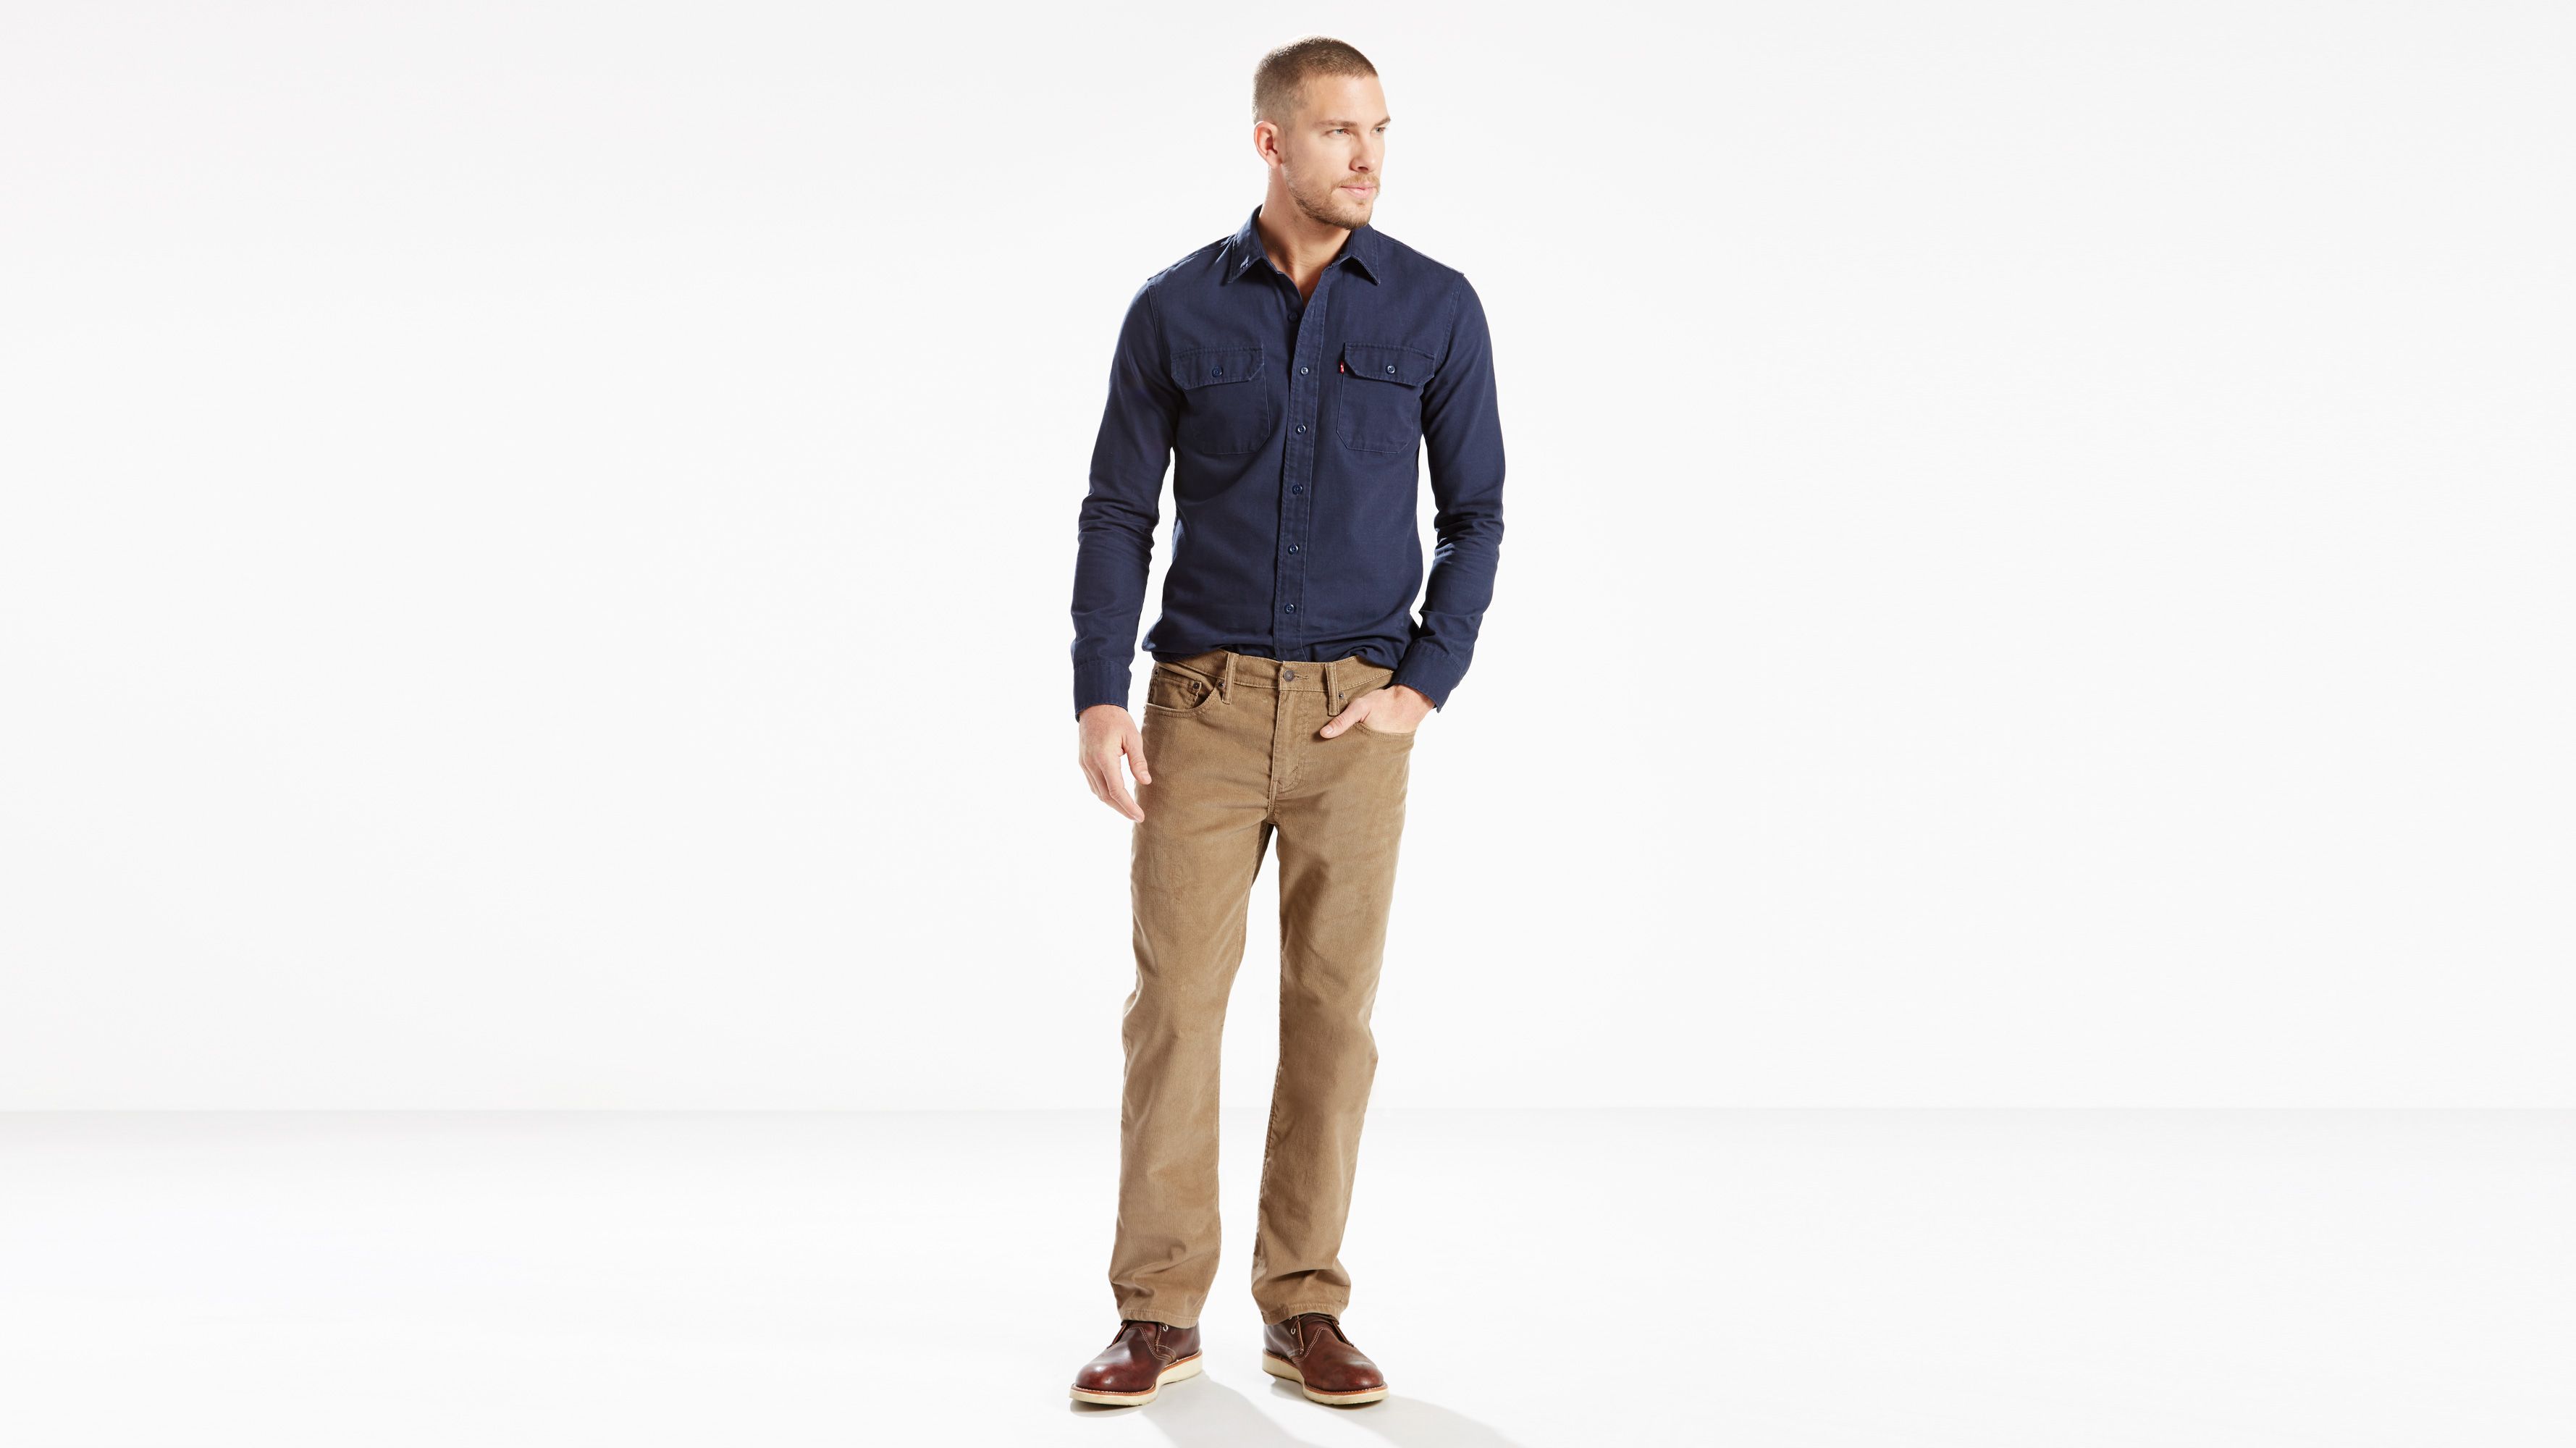 Pants - Shop Men's Chinos, Trousers & Pants | Levi's® US